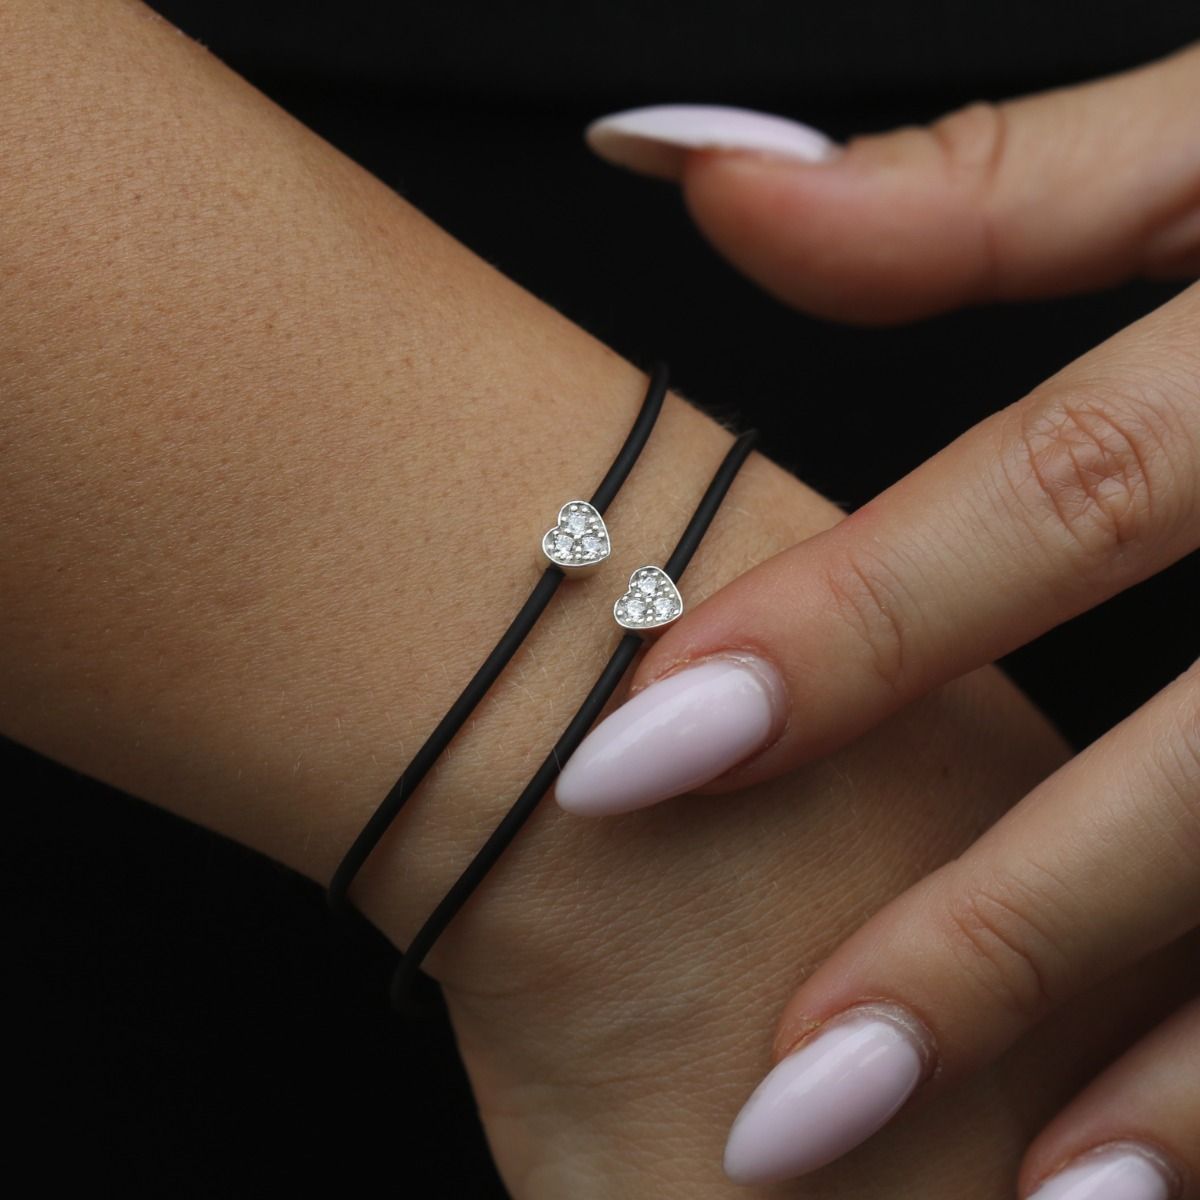 Ties of Heart Crystal Bracelet - Black String Bracelet - Gifts for Her